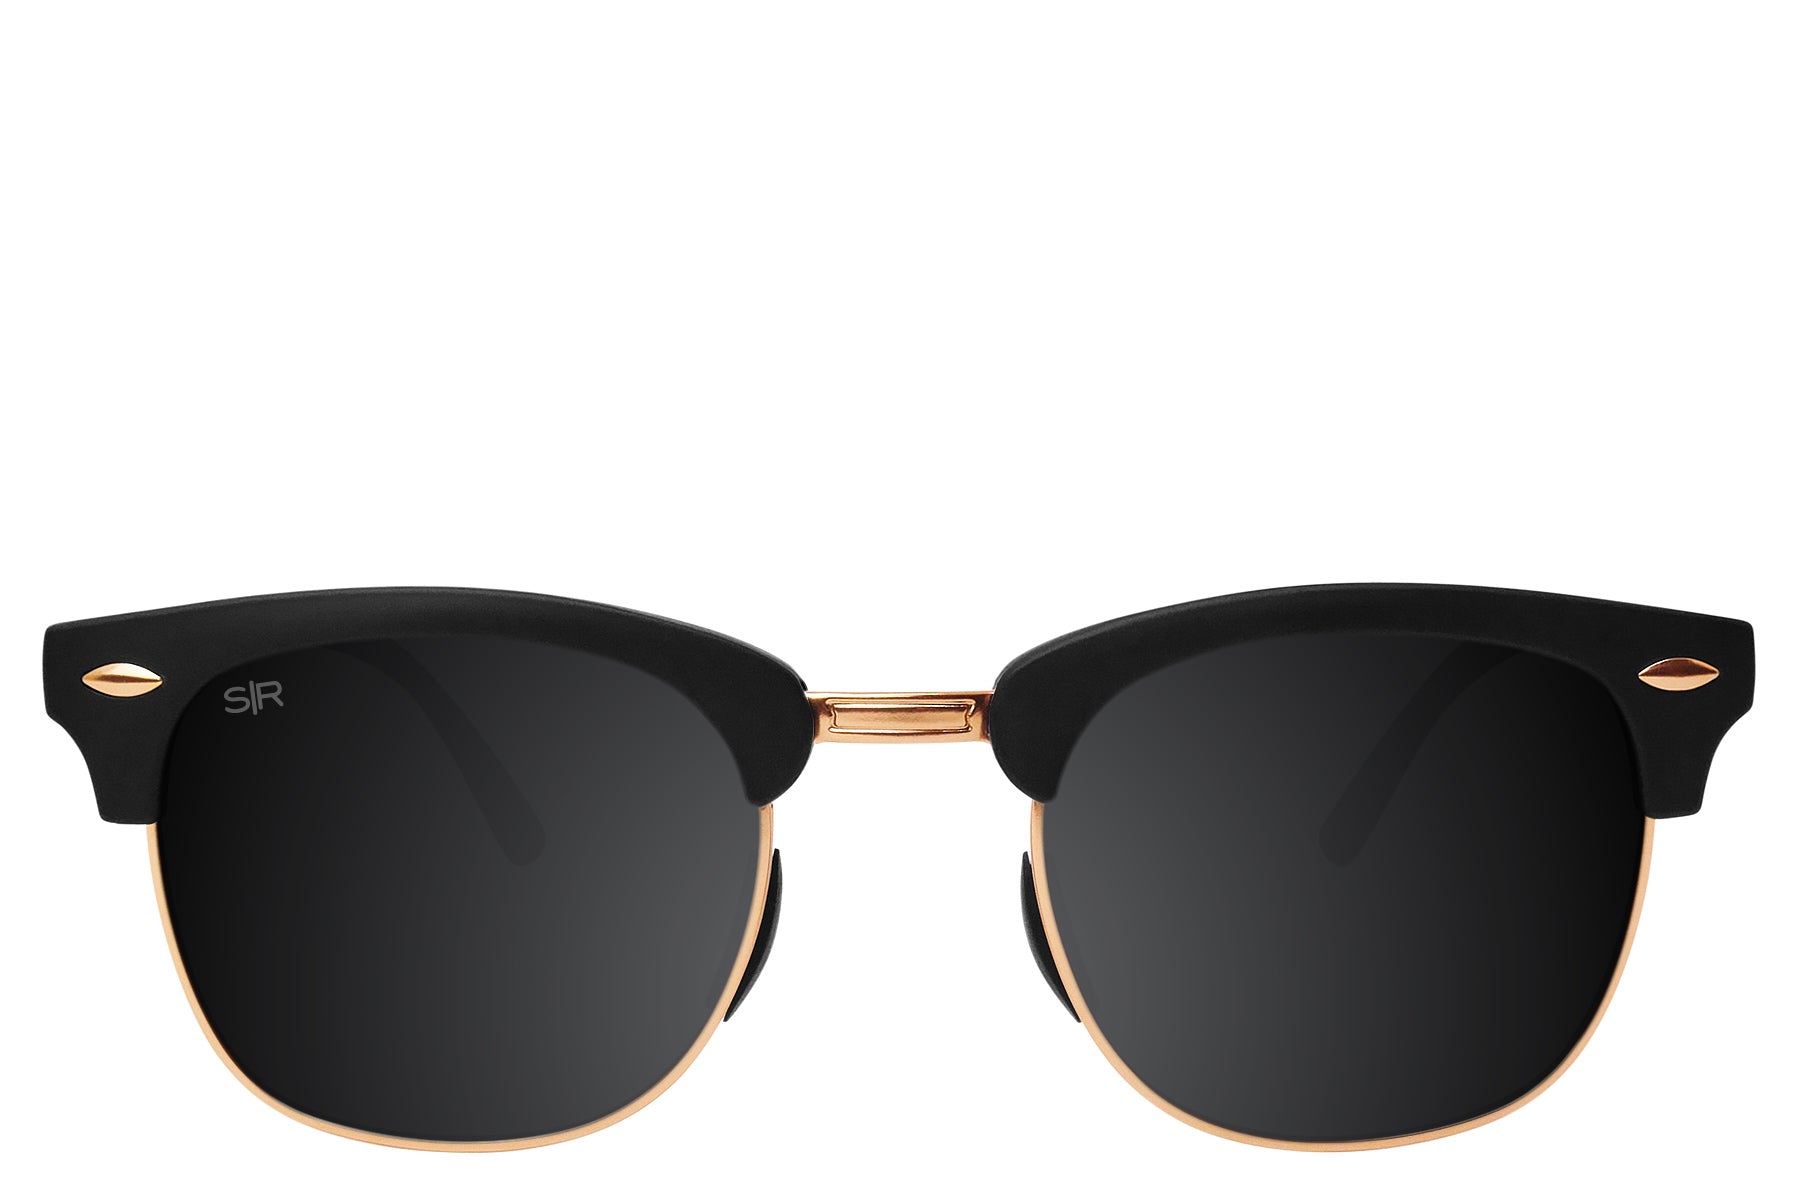 Shady Rays Classic - Oakmont Original Polarized Sunglasses